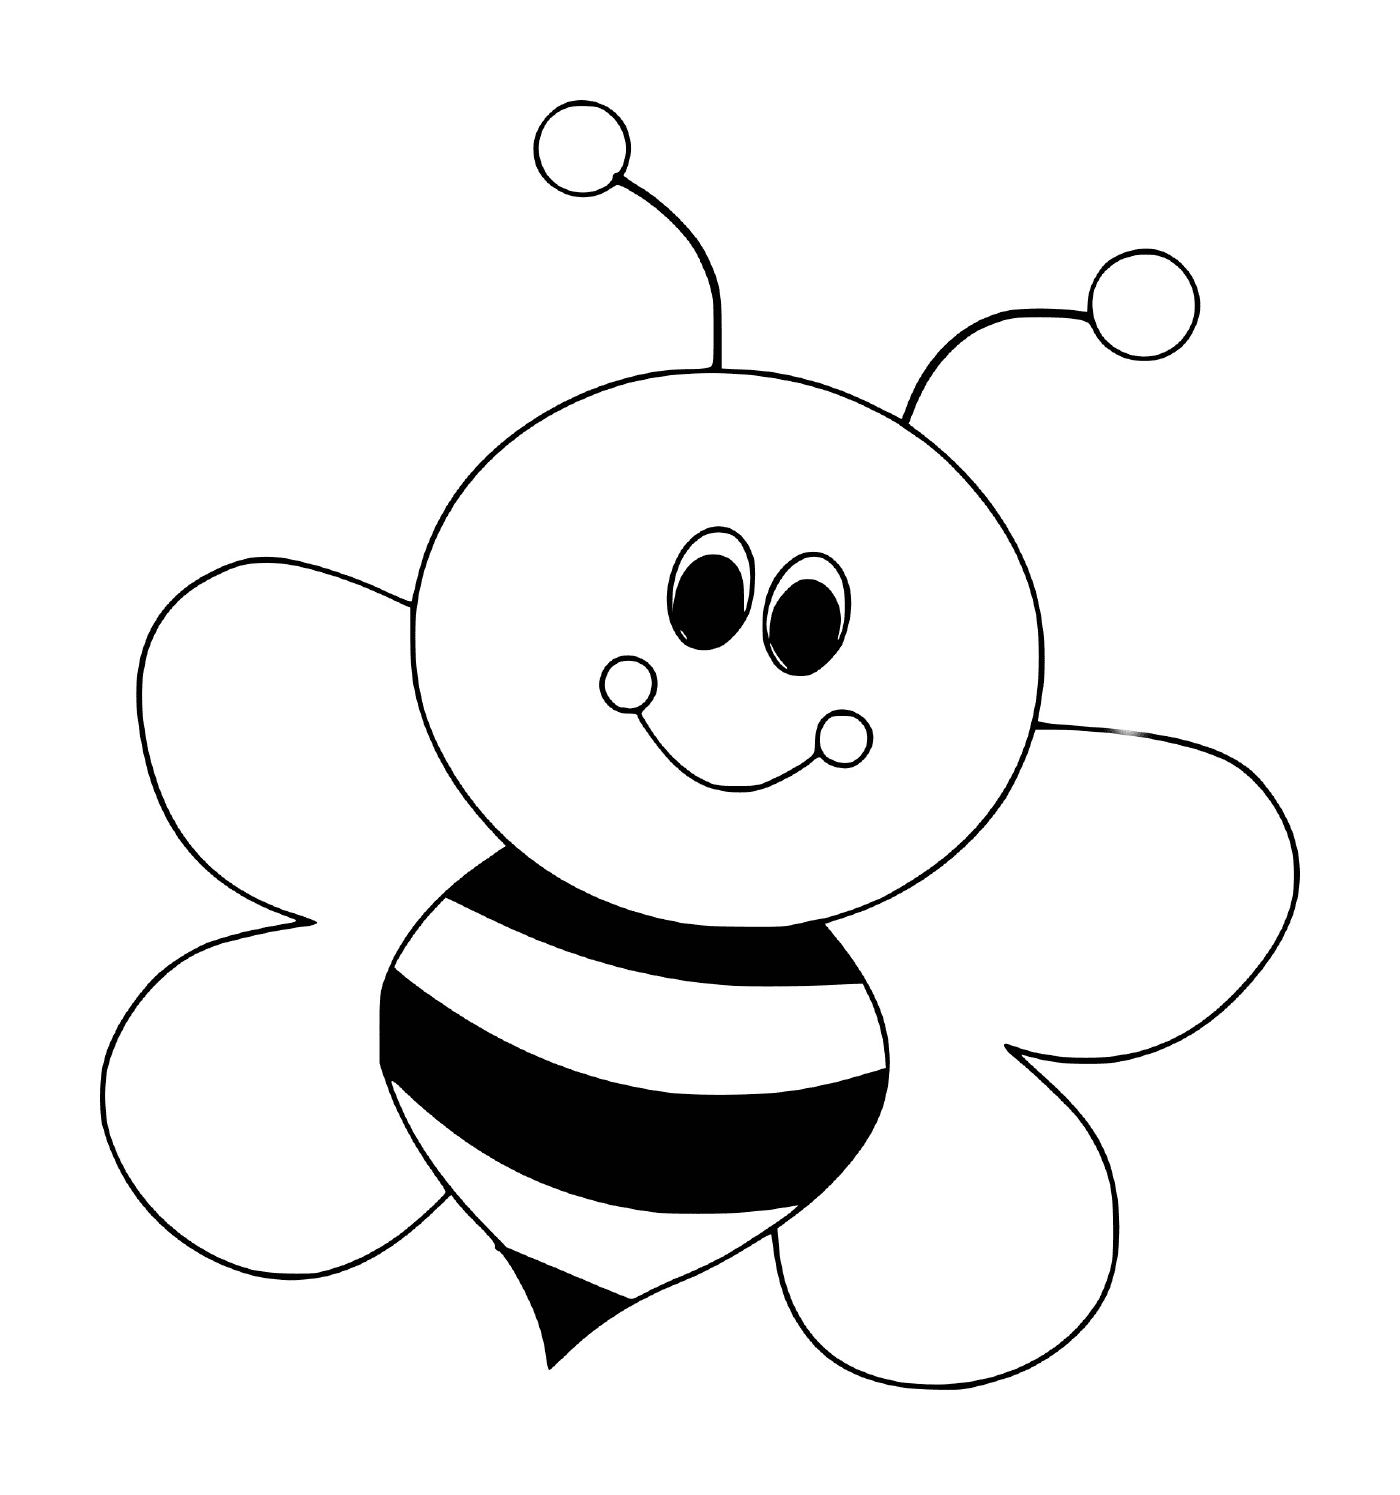  Liebenswert lächelnde Biene 